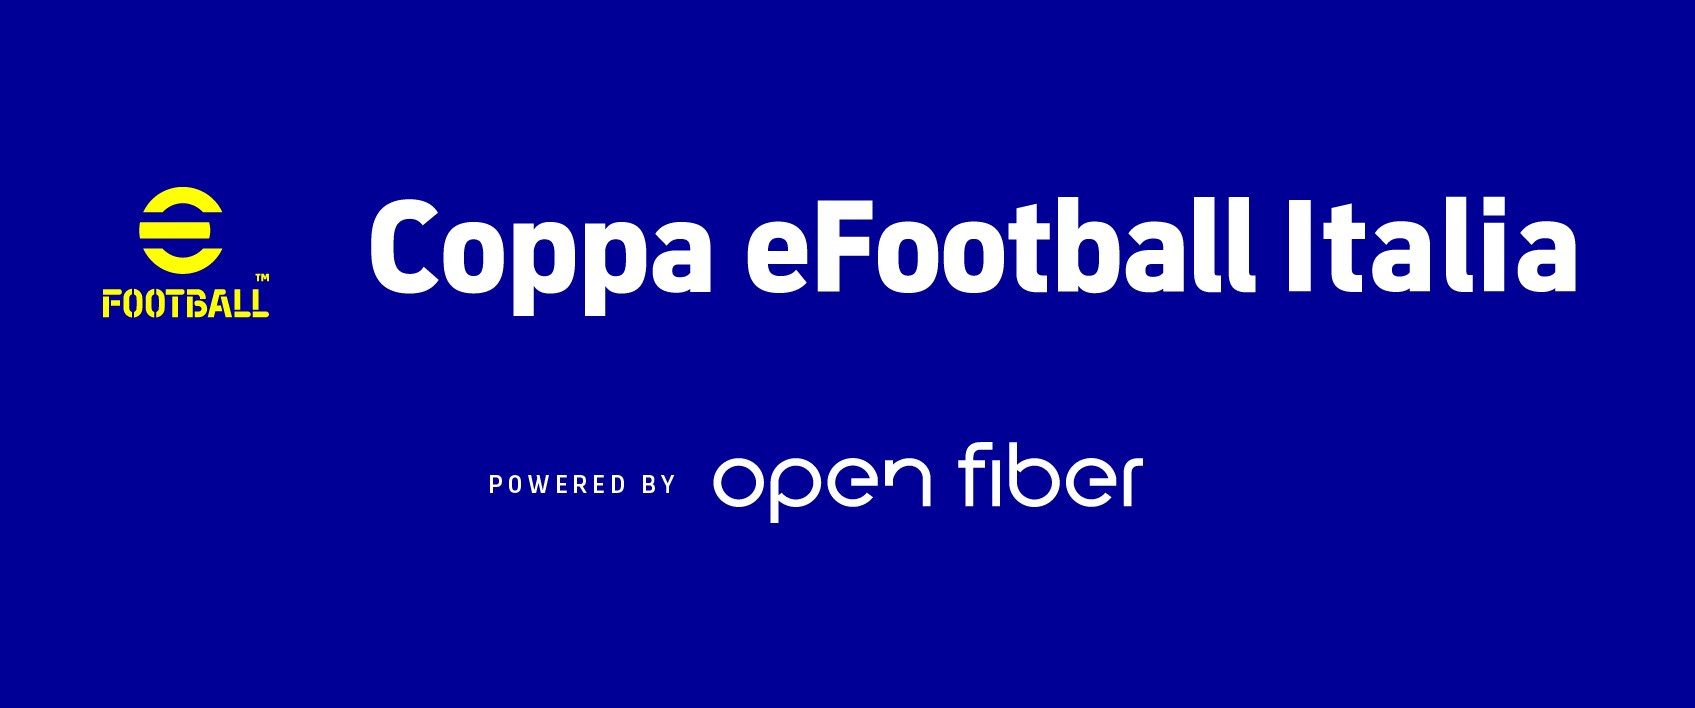 Coppa eFootball Italia celebra la conclusione della prima stagione 